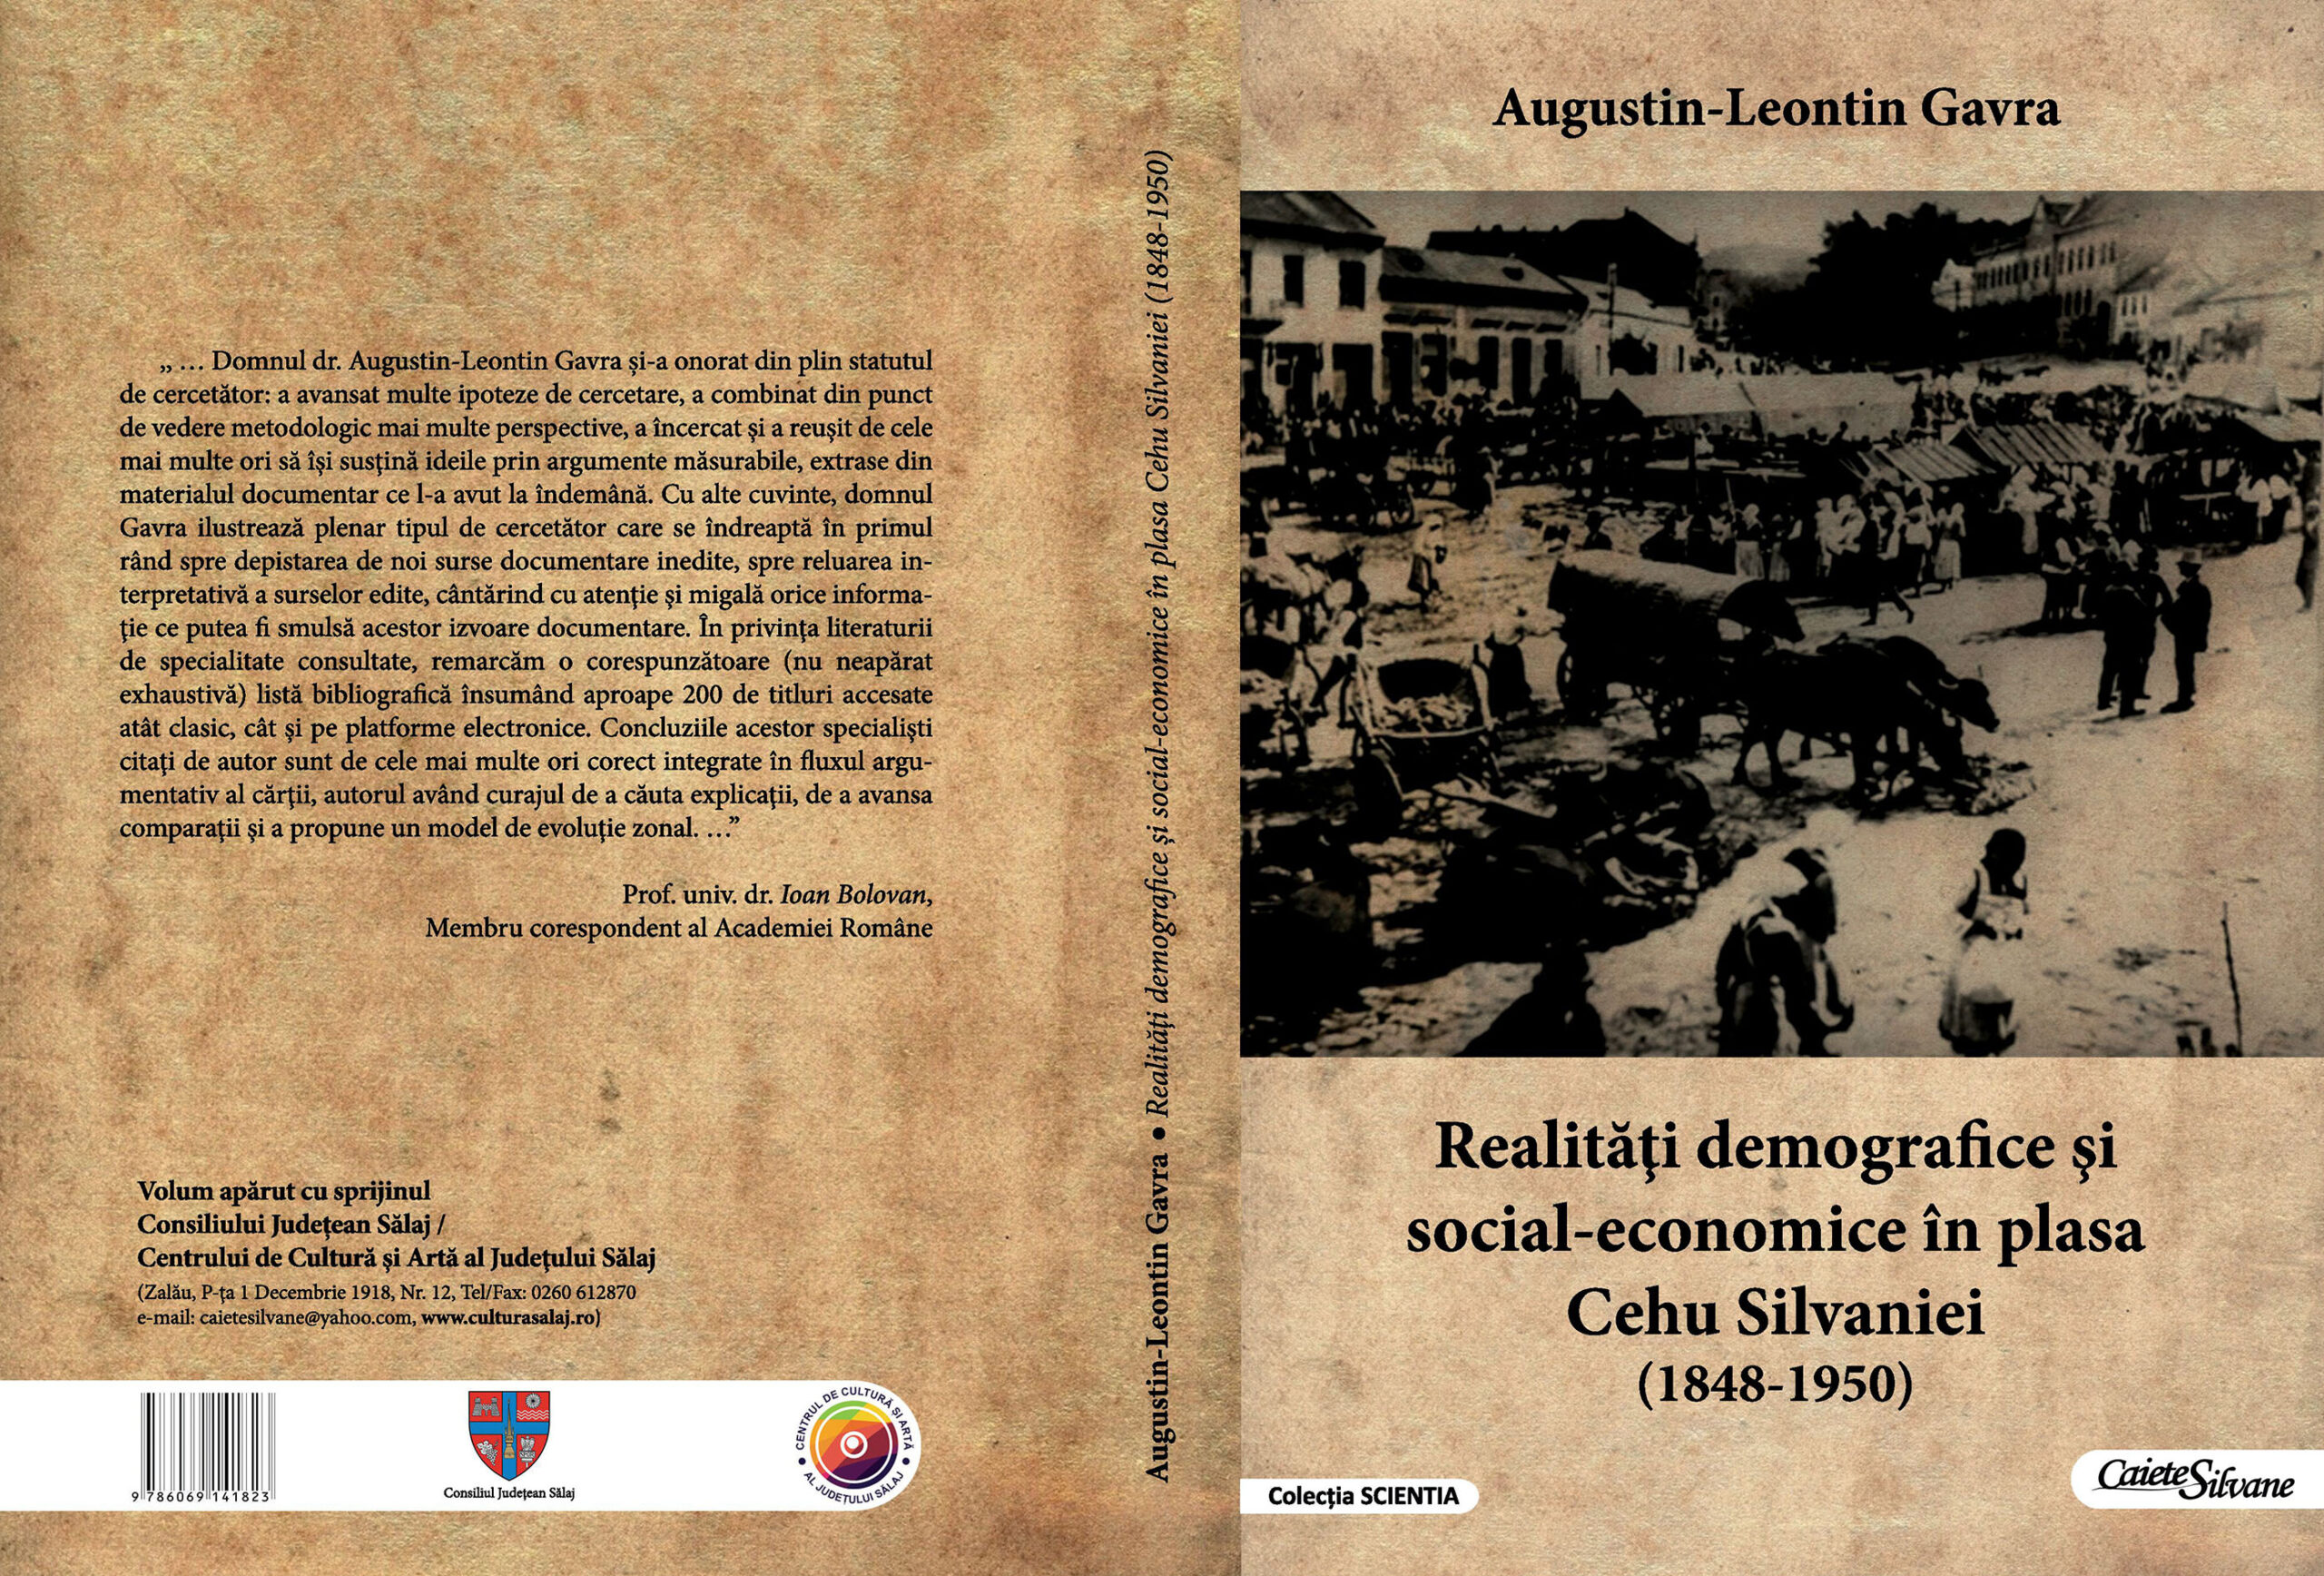 O nouă carte de Augustin-Leontin Gavra la Editura „Caiete Silvane”